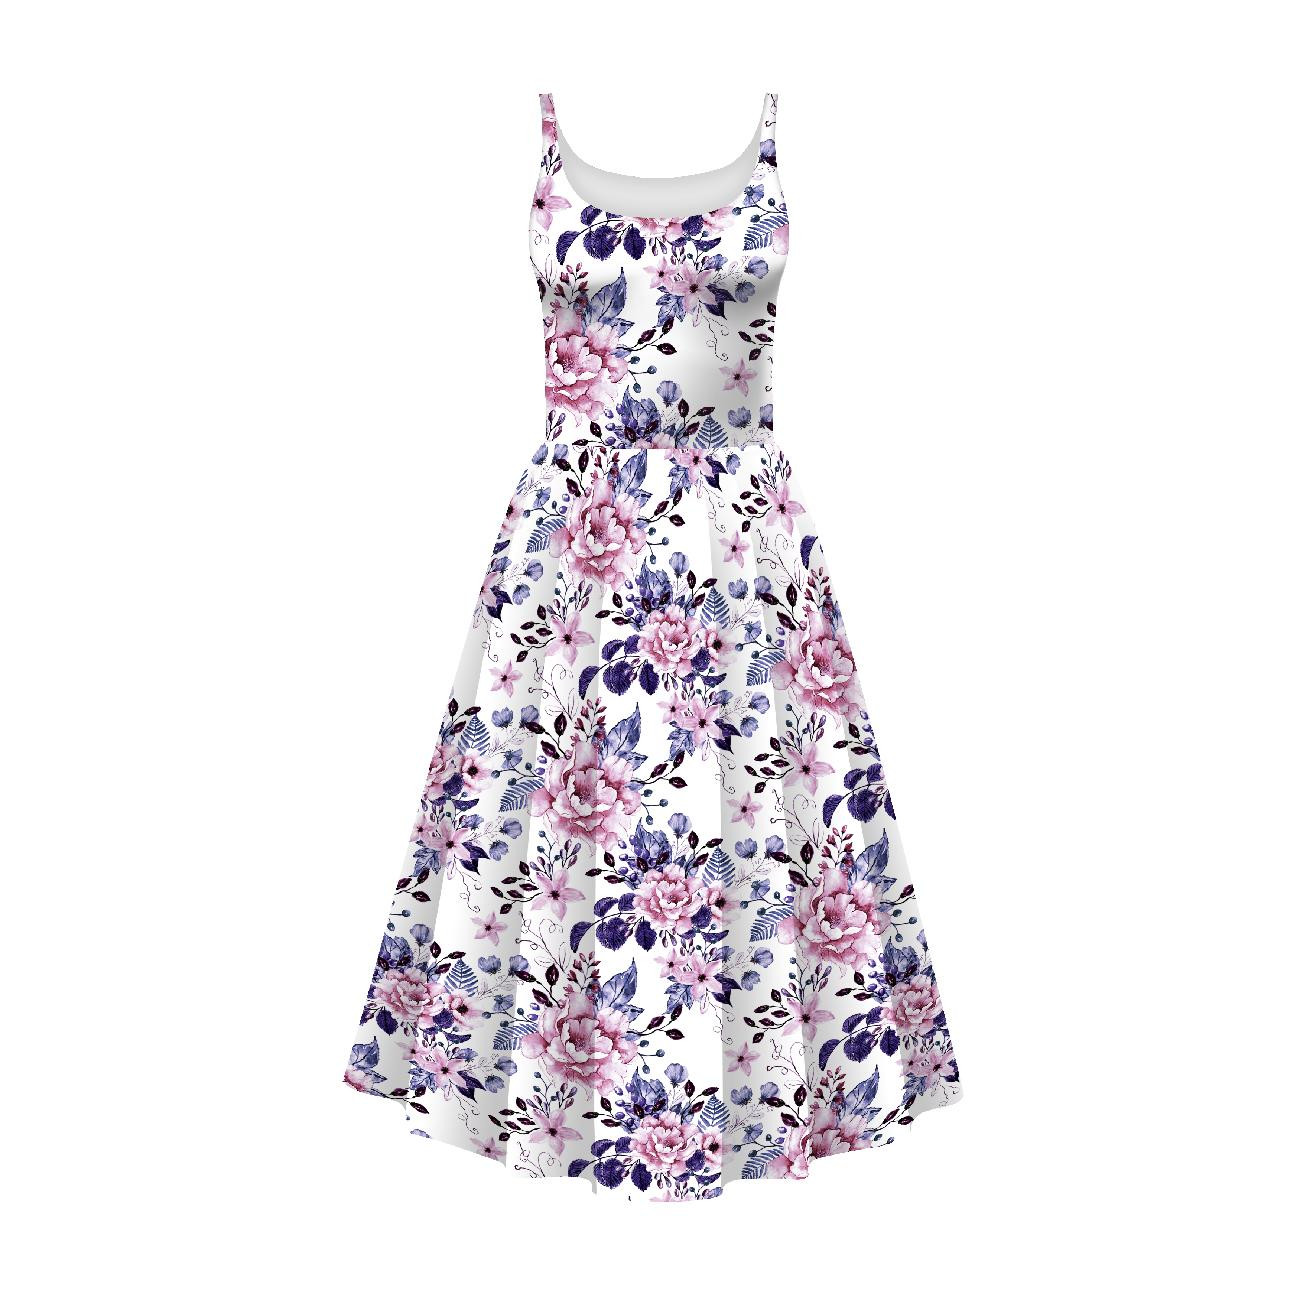 DRESS "ISABELLE" - WILD ROSE FLOWERS PAT. 1 (BLOOMING MEADOW) (Very Peri) - sewing set